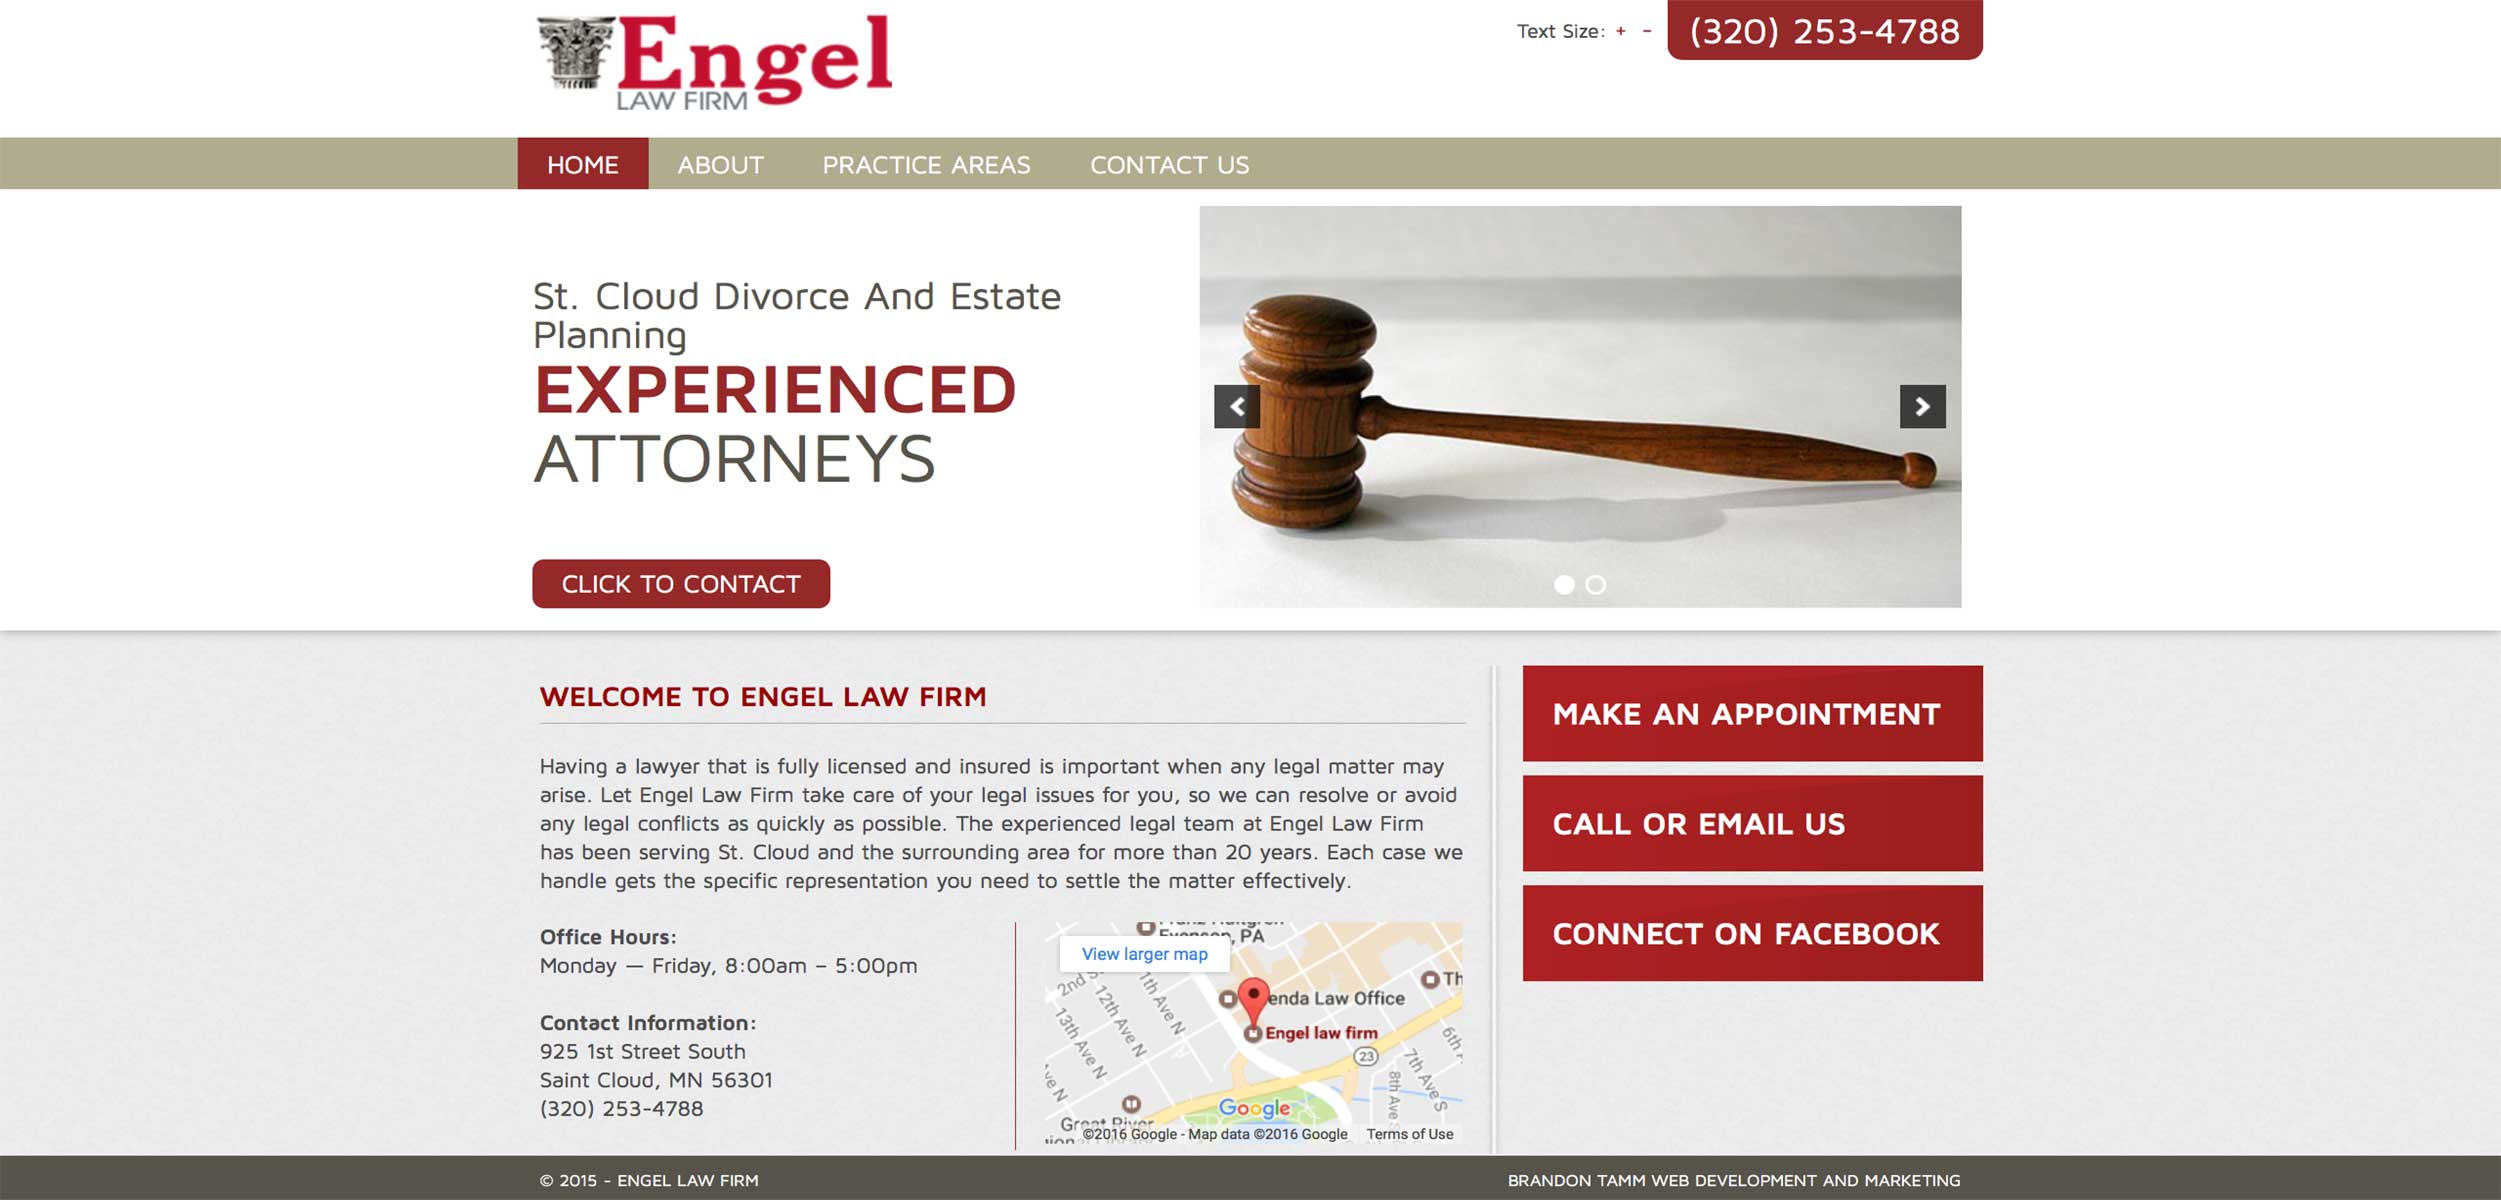 engel-law-firm-web-development-projects